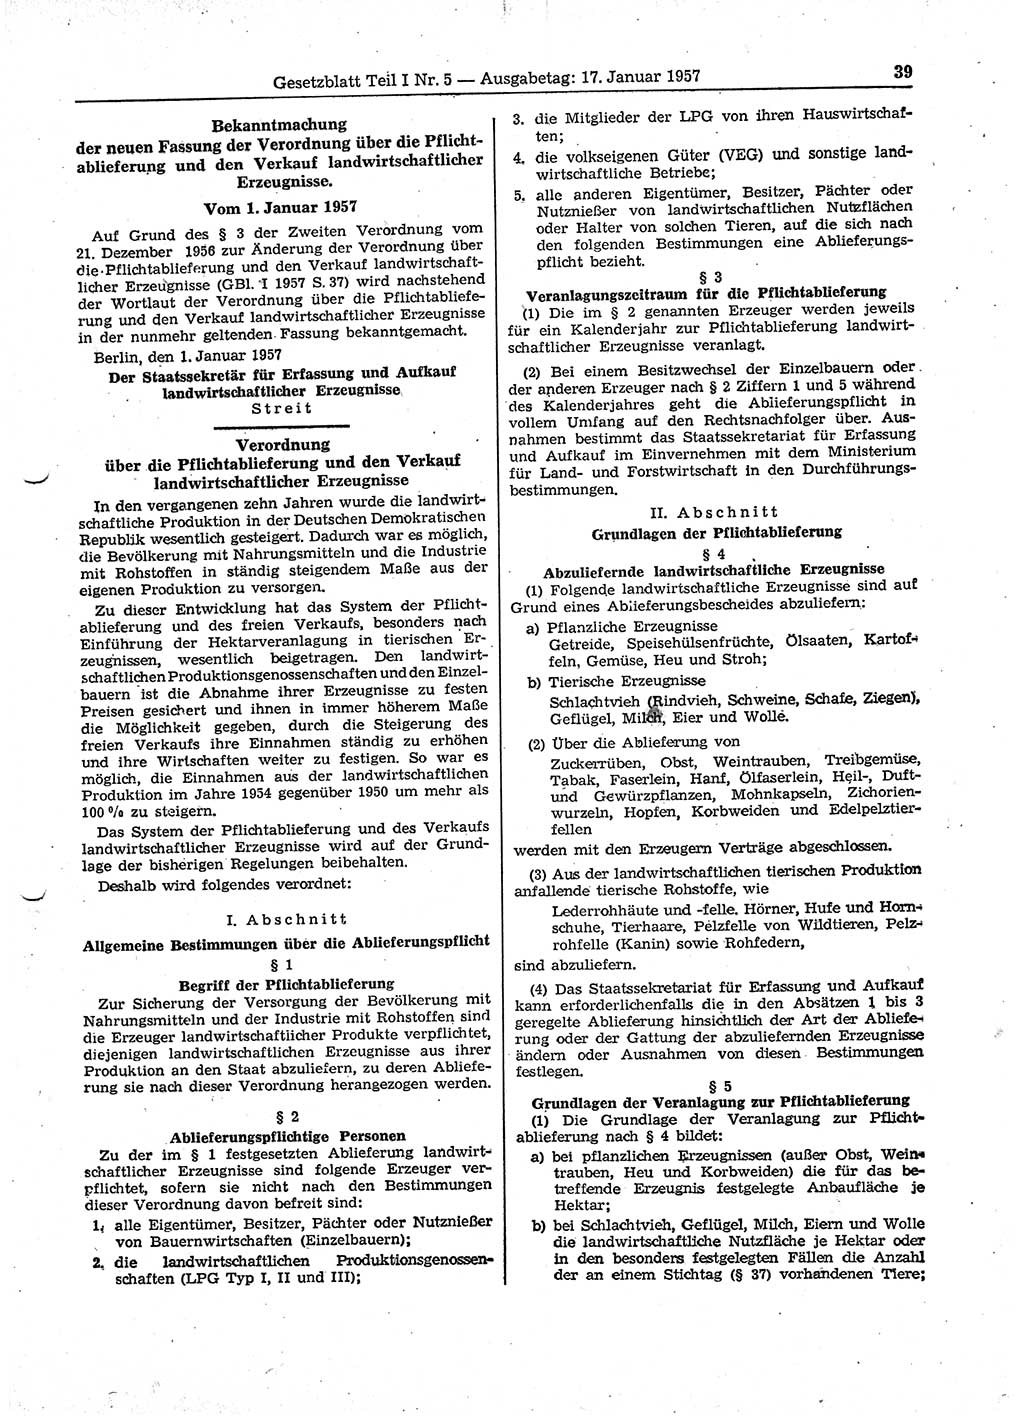 Gesetzblatt (GBl.) der Deutschen Demokratischen Republik (DDR) Teil Ⅰ 1957, Seite 39 (GBl. DDR Ⅰ 1957, S. 39)